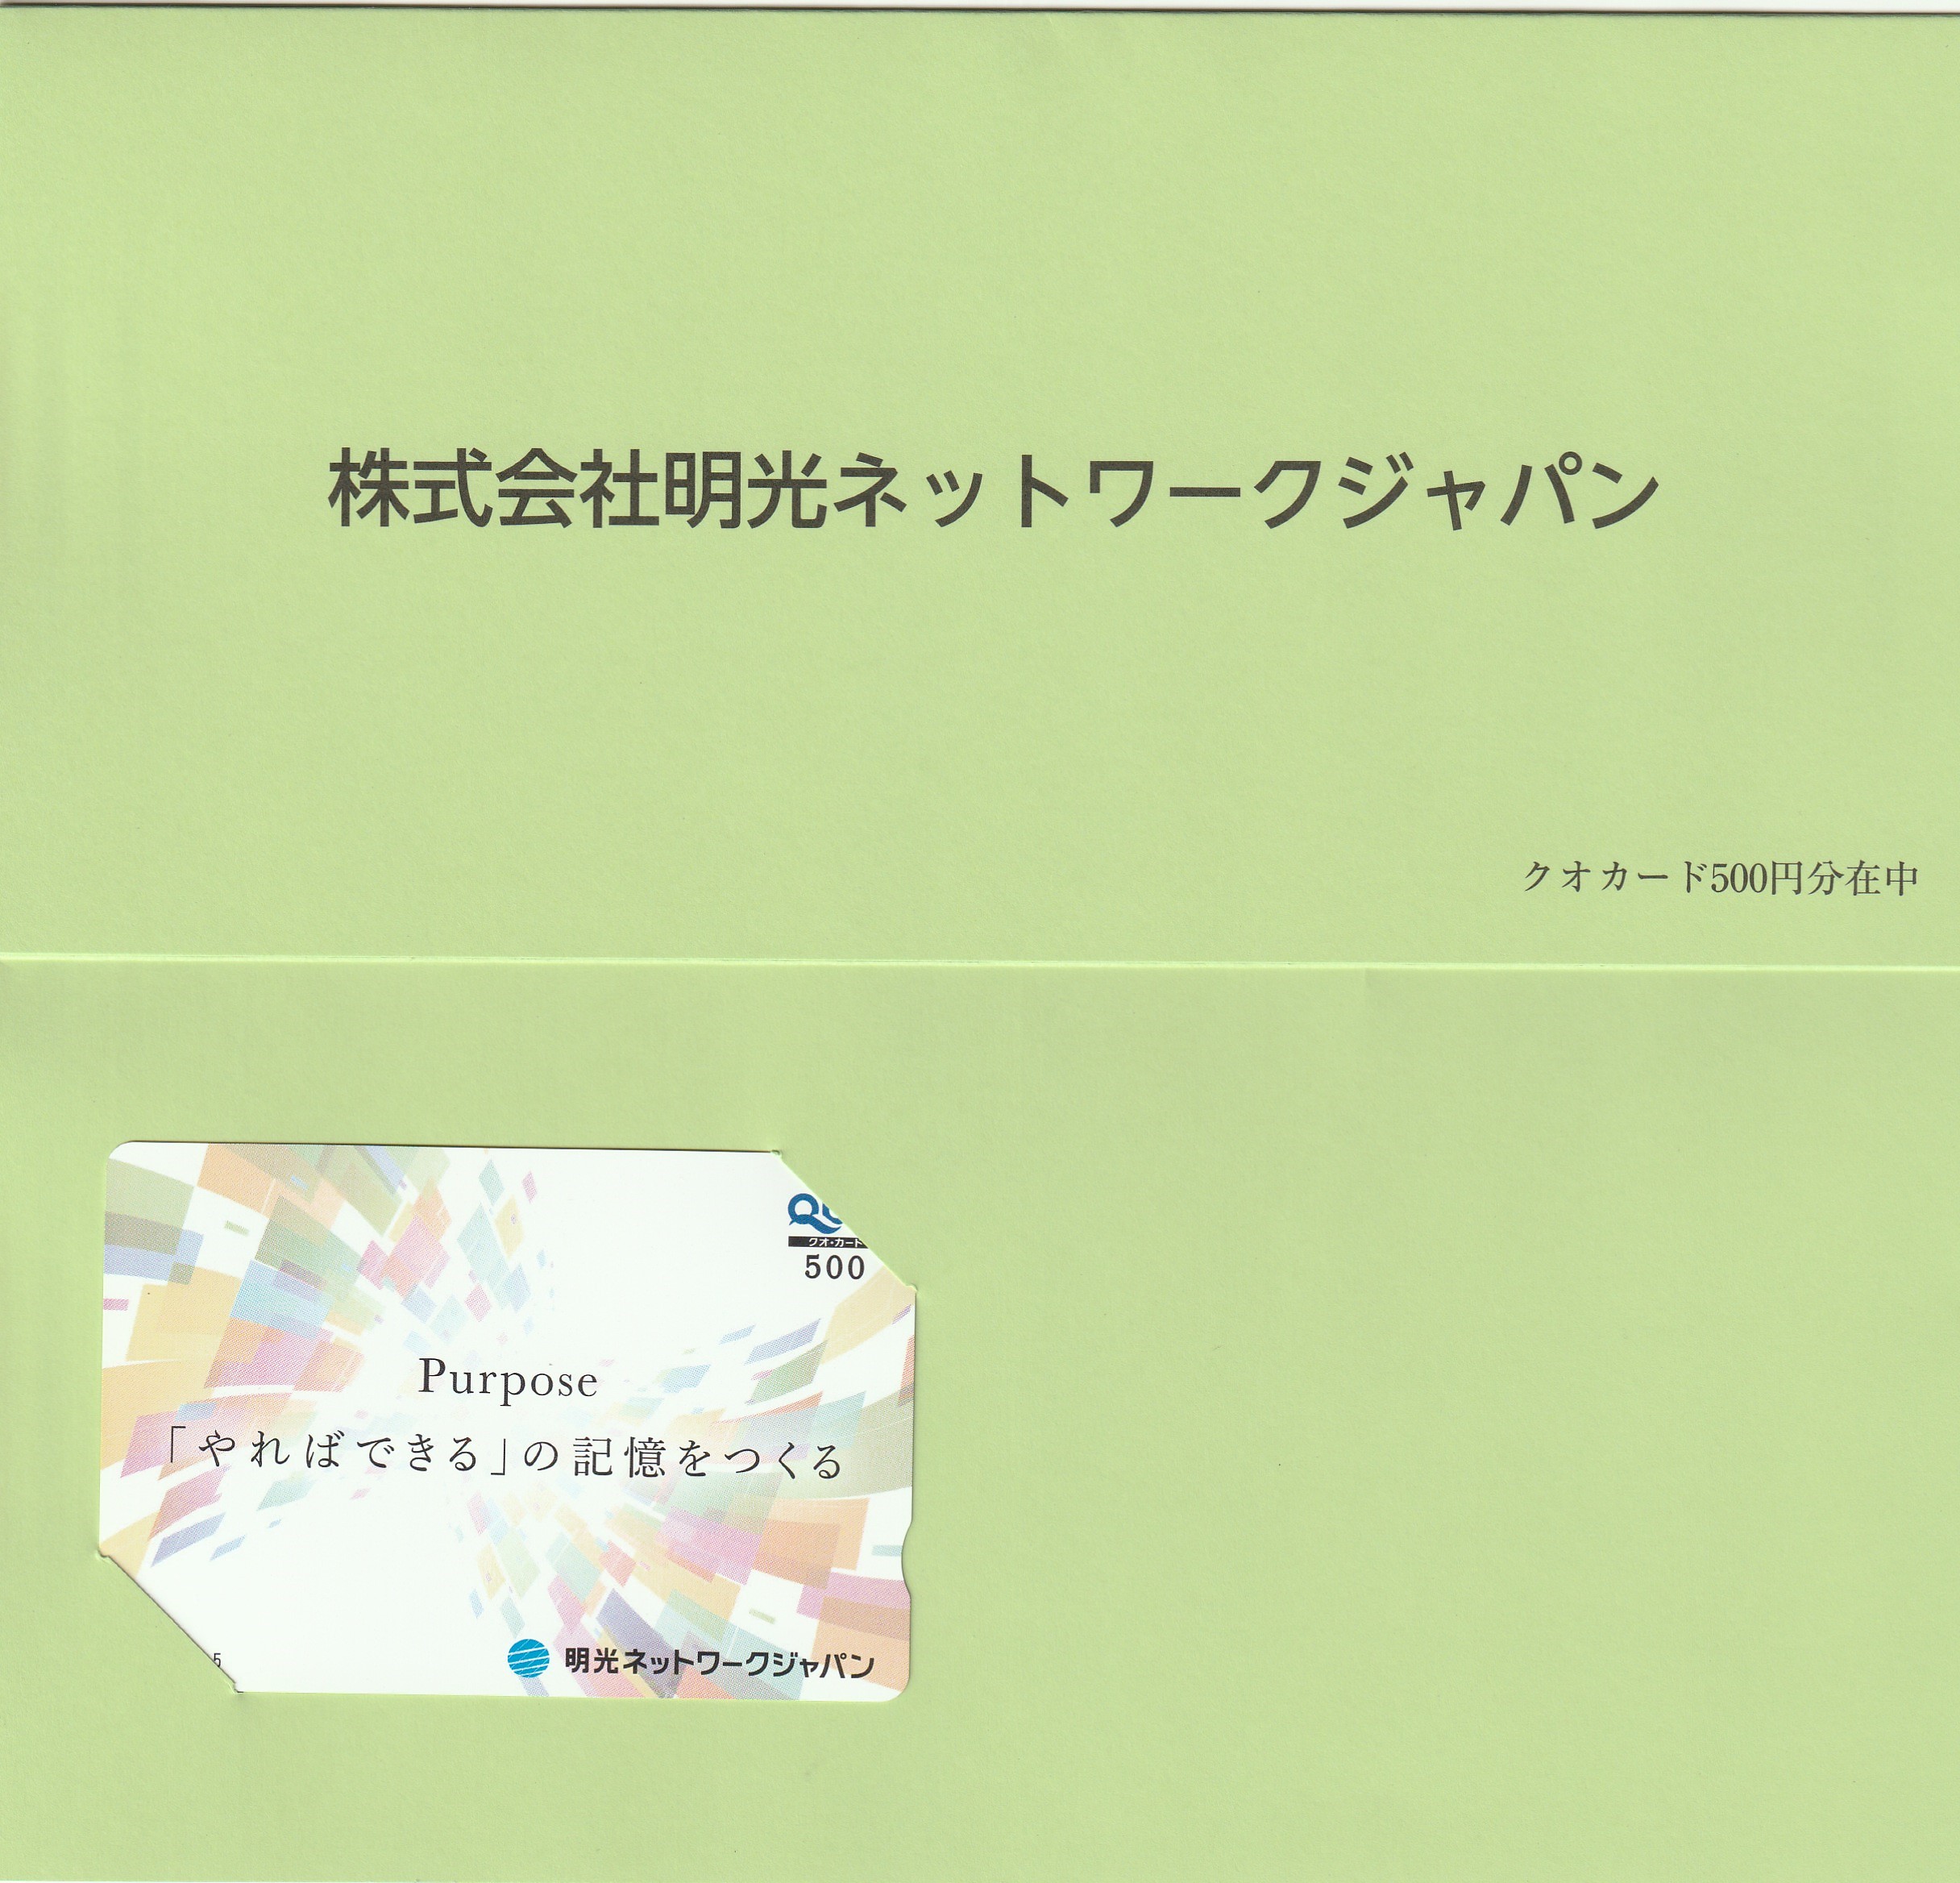 【8月優待】株式会社明光ネットワークジャパンからQUOカードが届きました